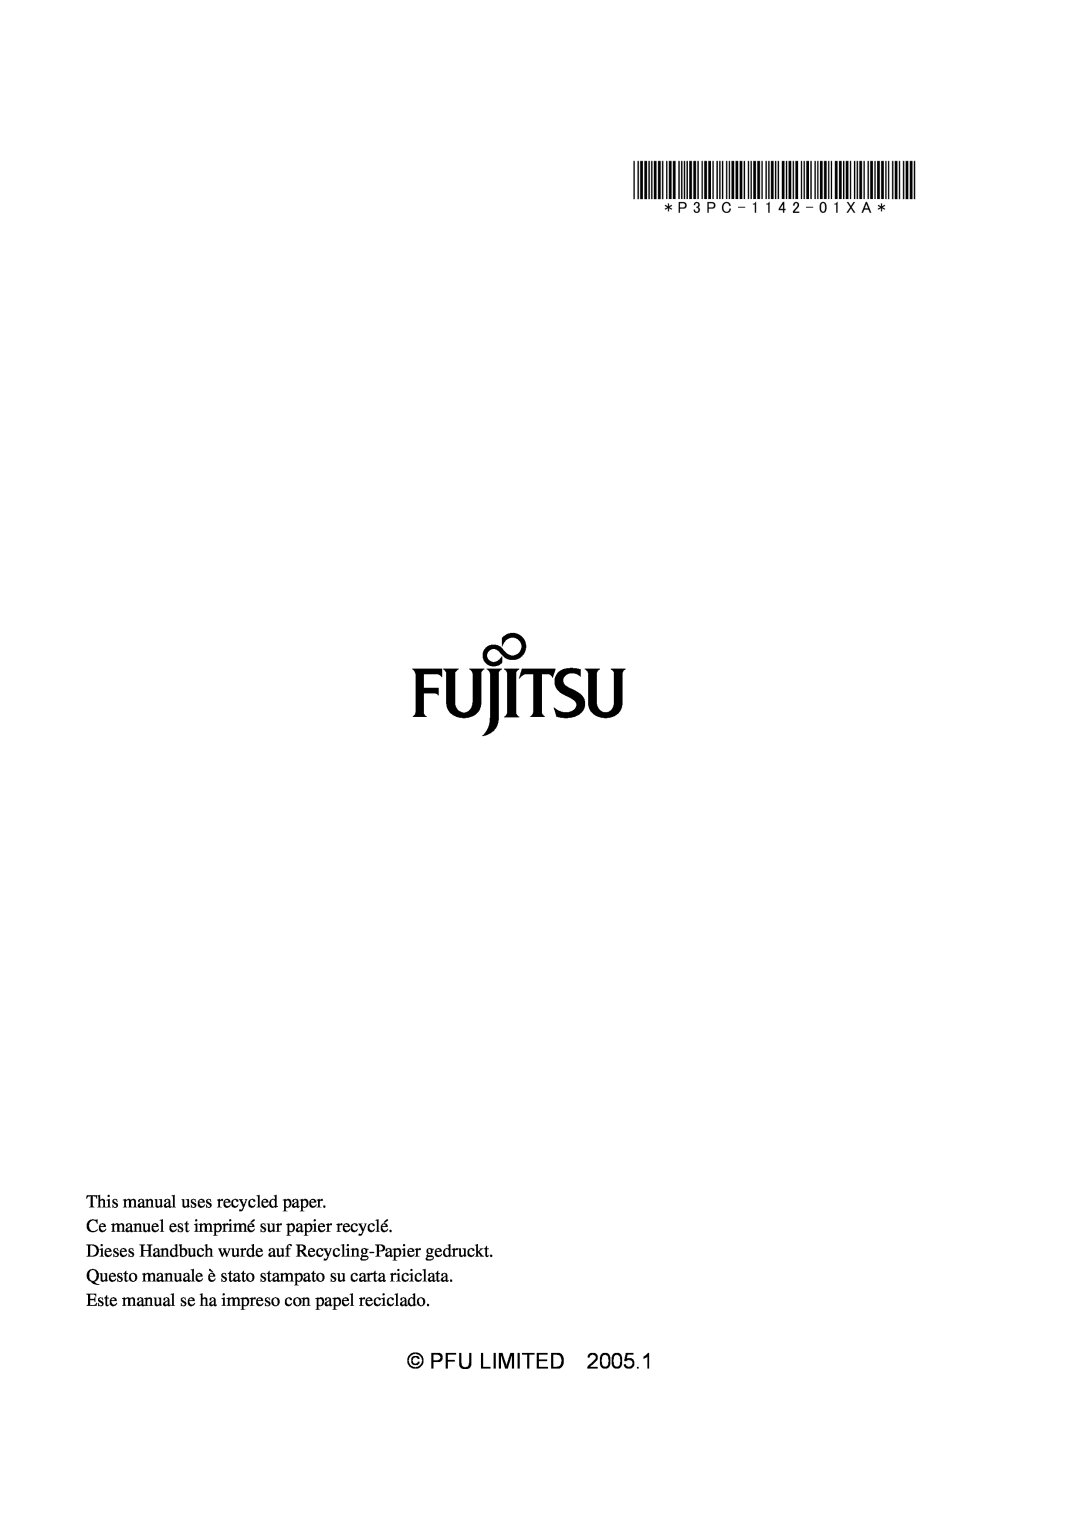 Fujitsu fi-5110EOX2 Pfu Limited, This manual uses recycled paper, Ce manuel est imprimé sur papier recyclé 